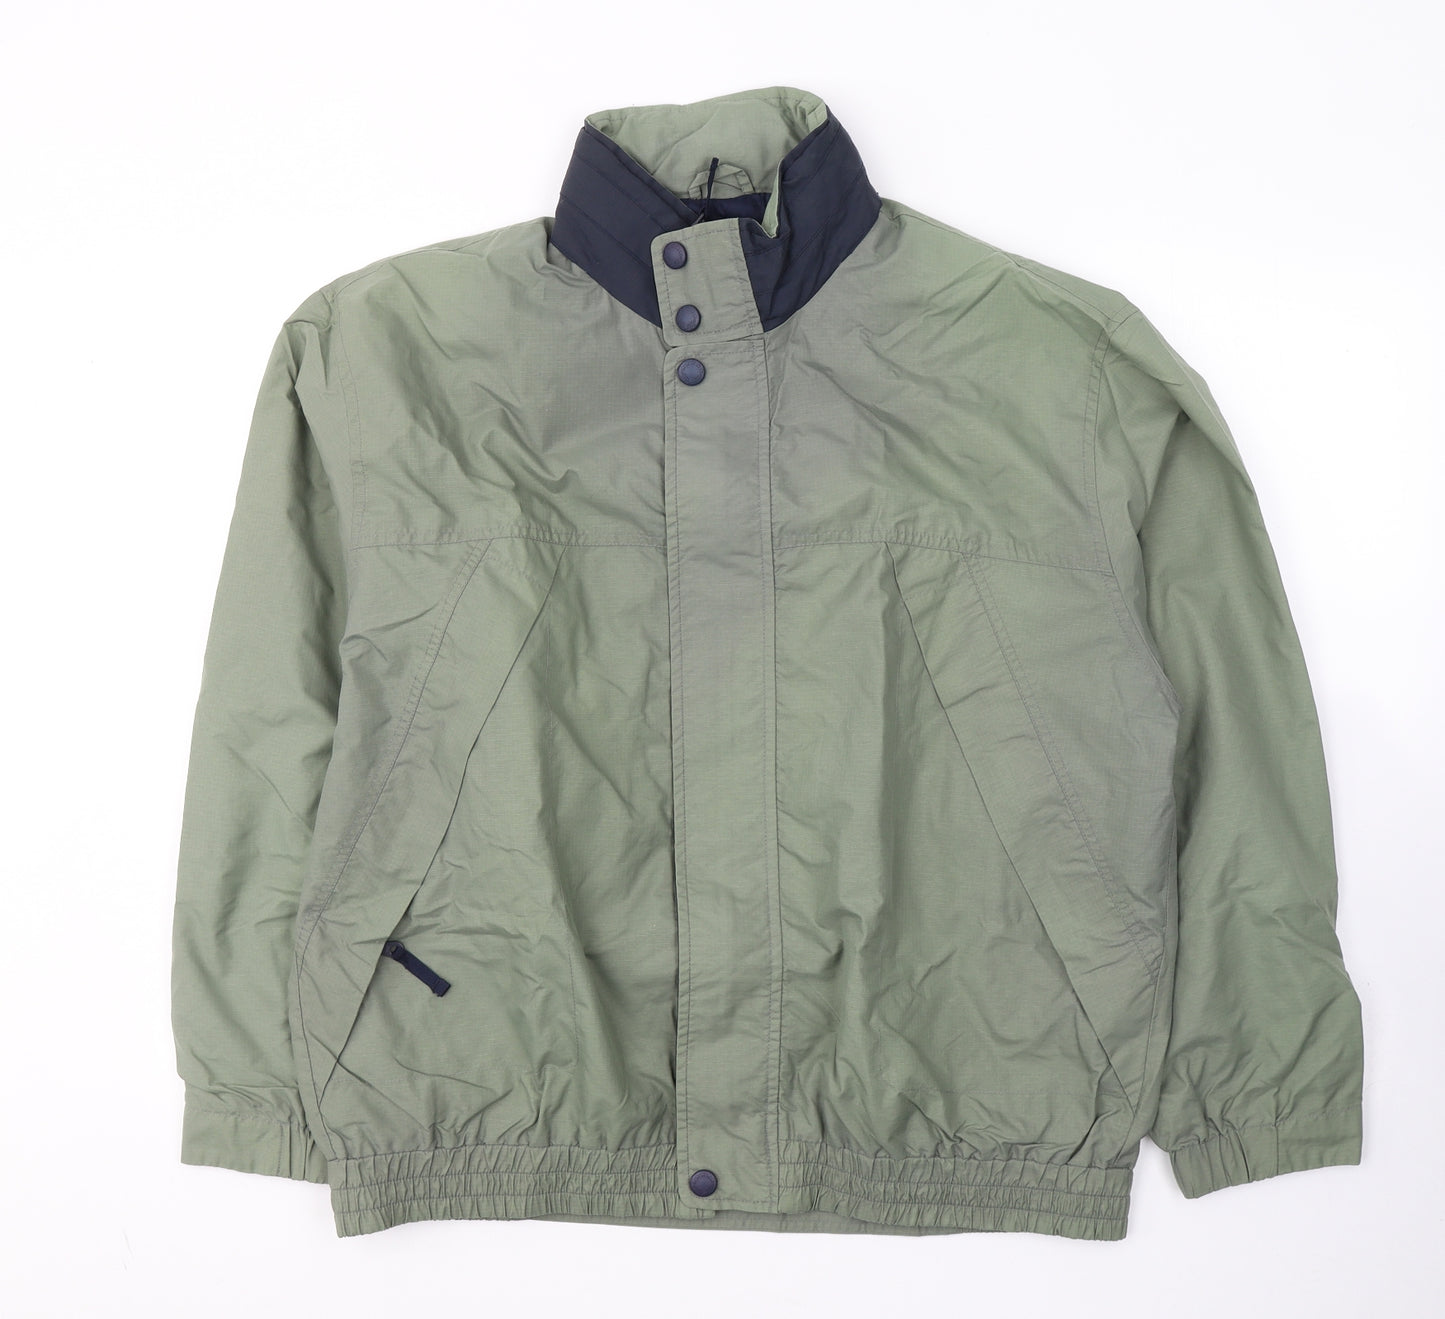 Essentials Mens Green   Jacket Coat Size L  Zip